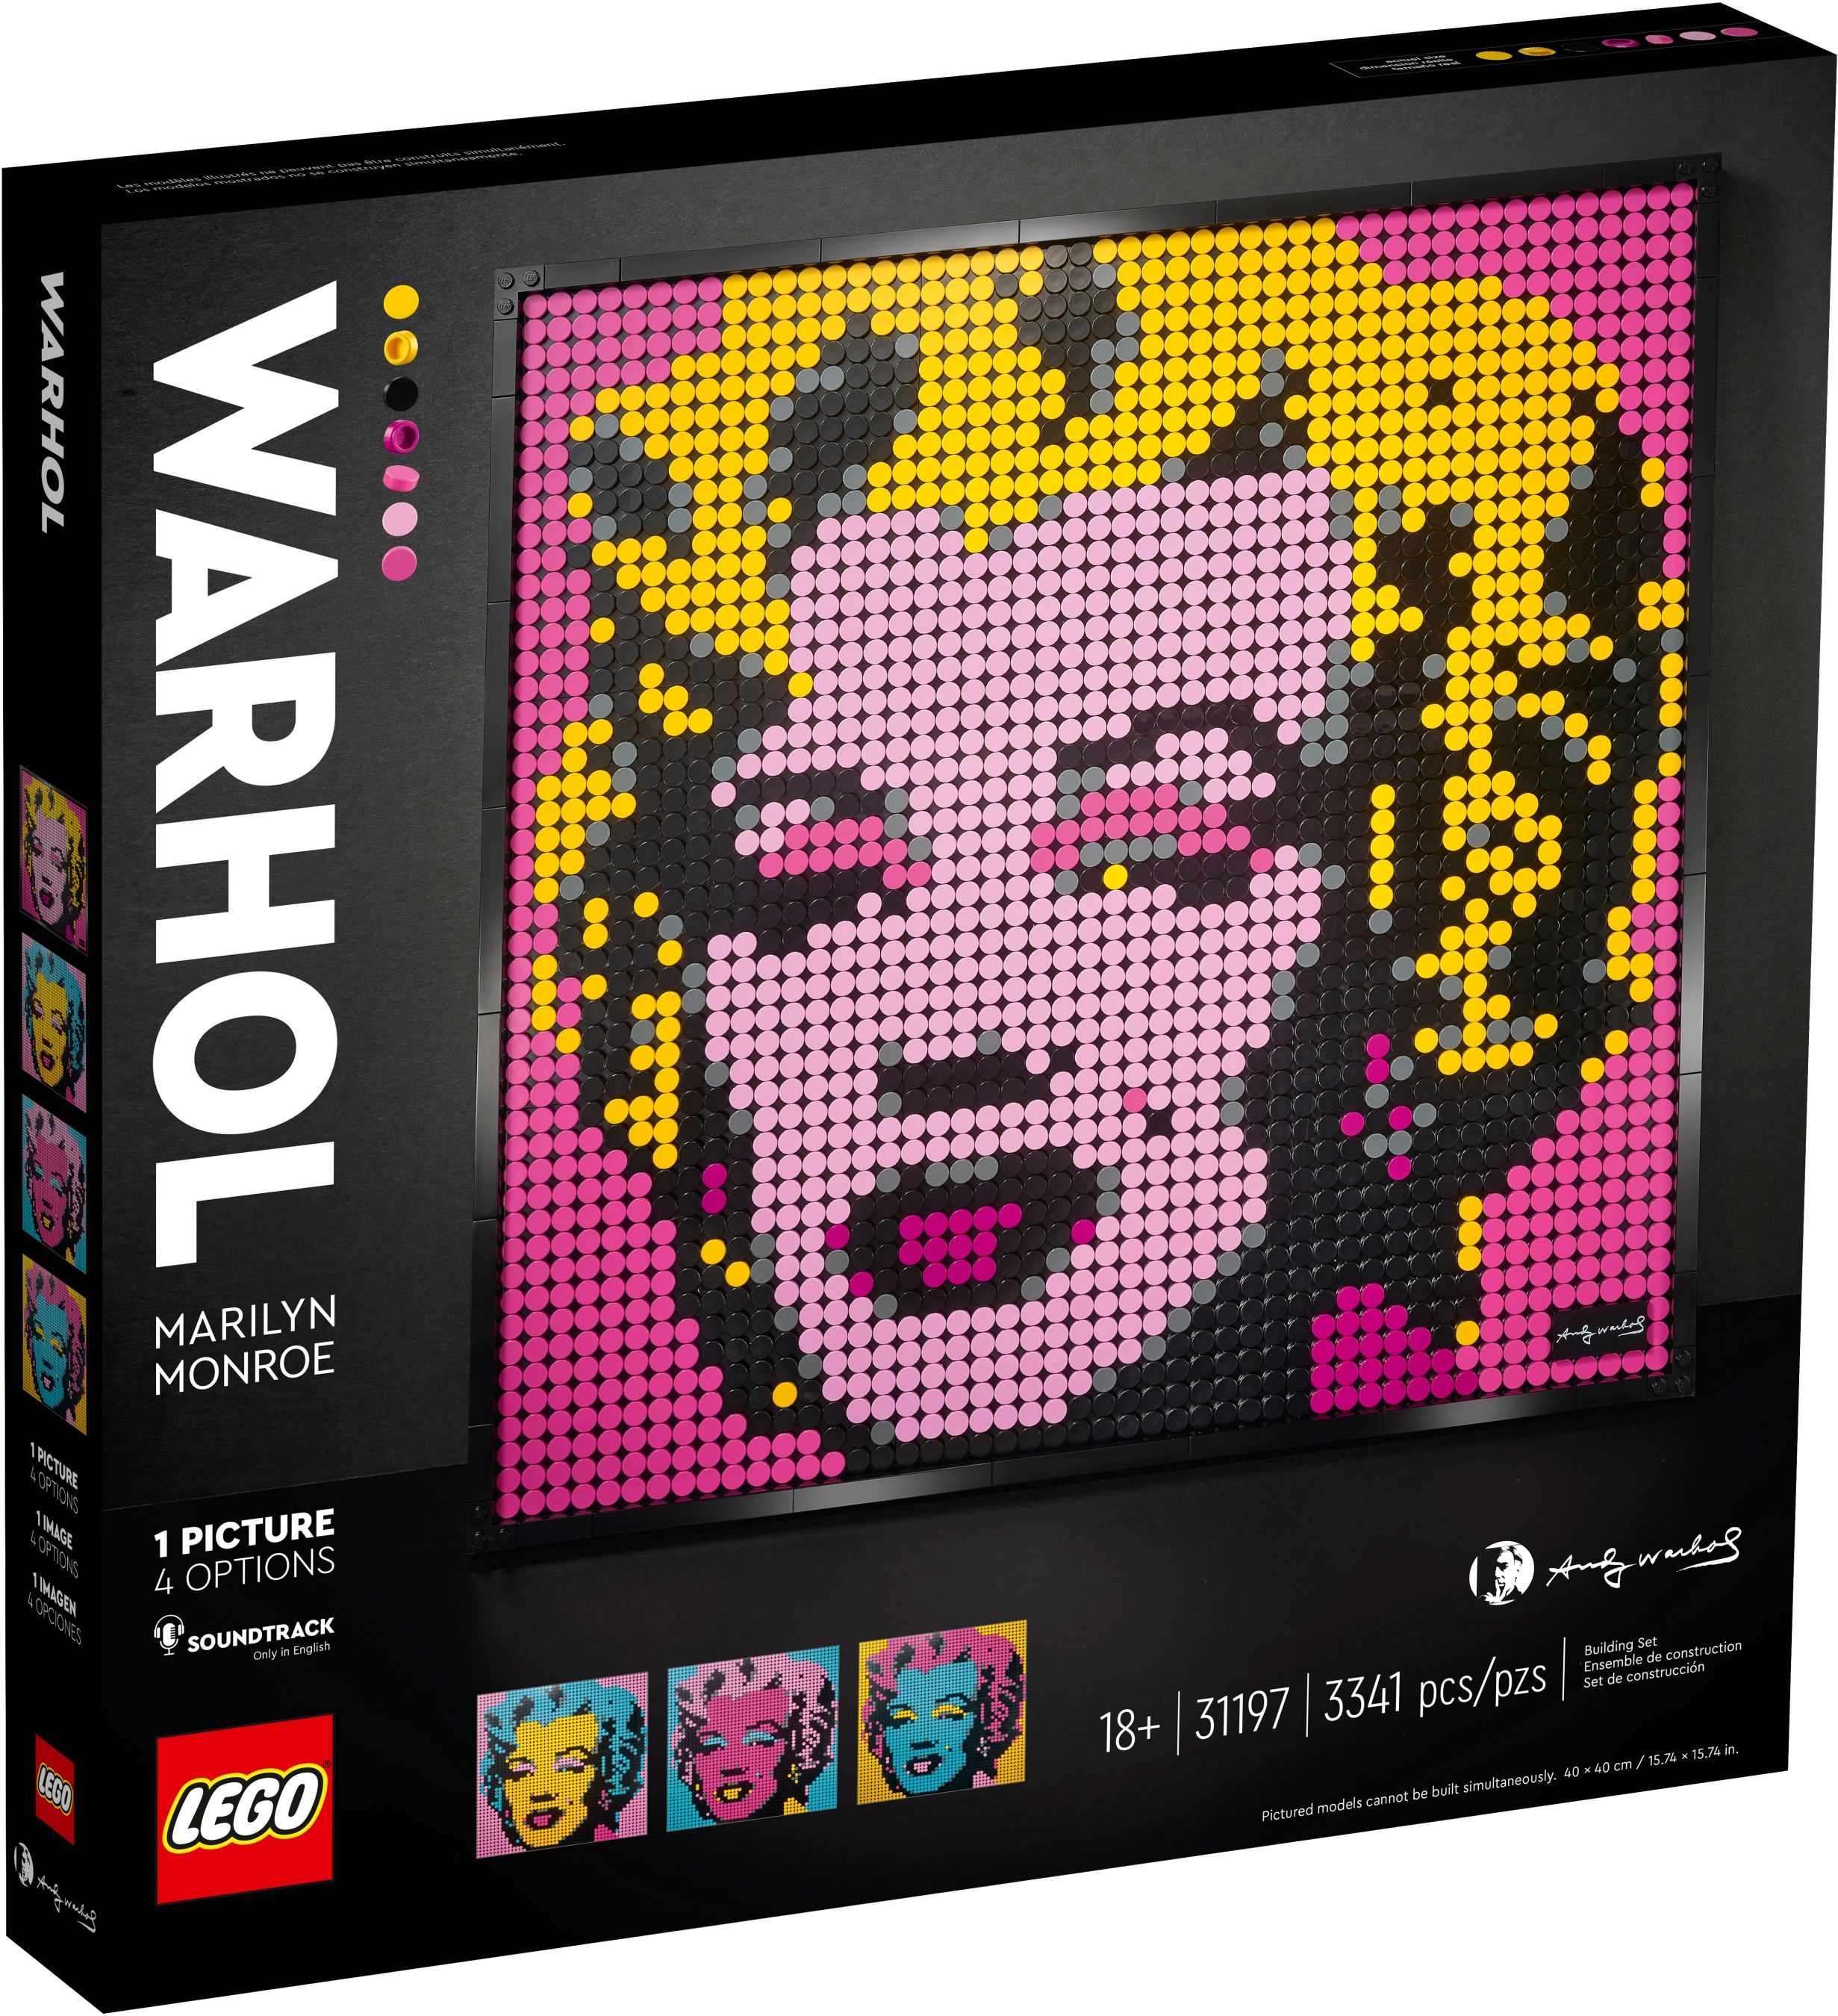 LEGO Art 31197 Andy Warhol's Marilyn Monroe LEGO_31197_alt1.jpg